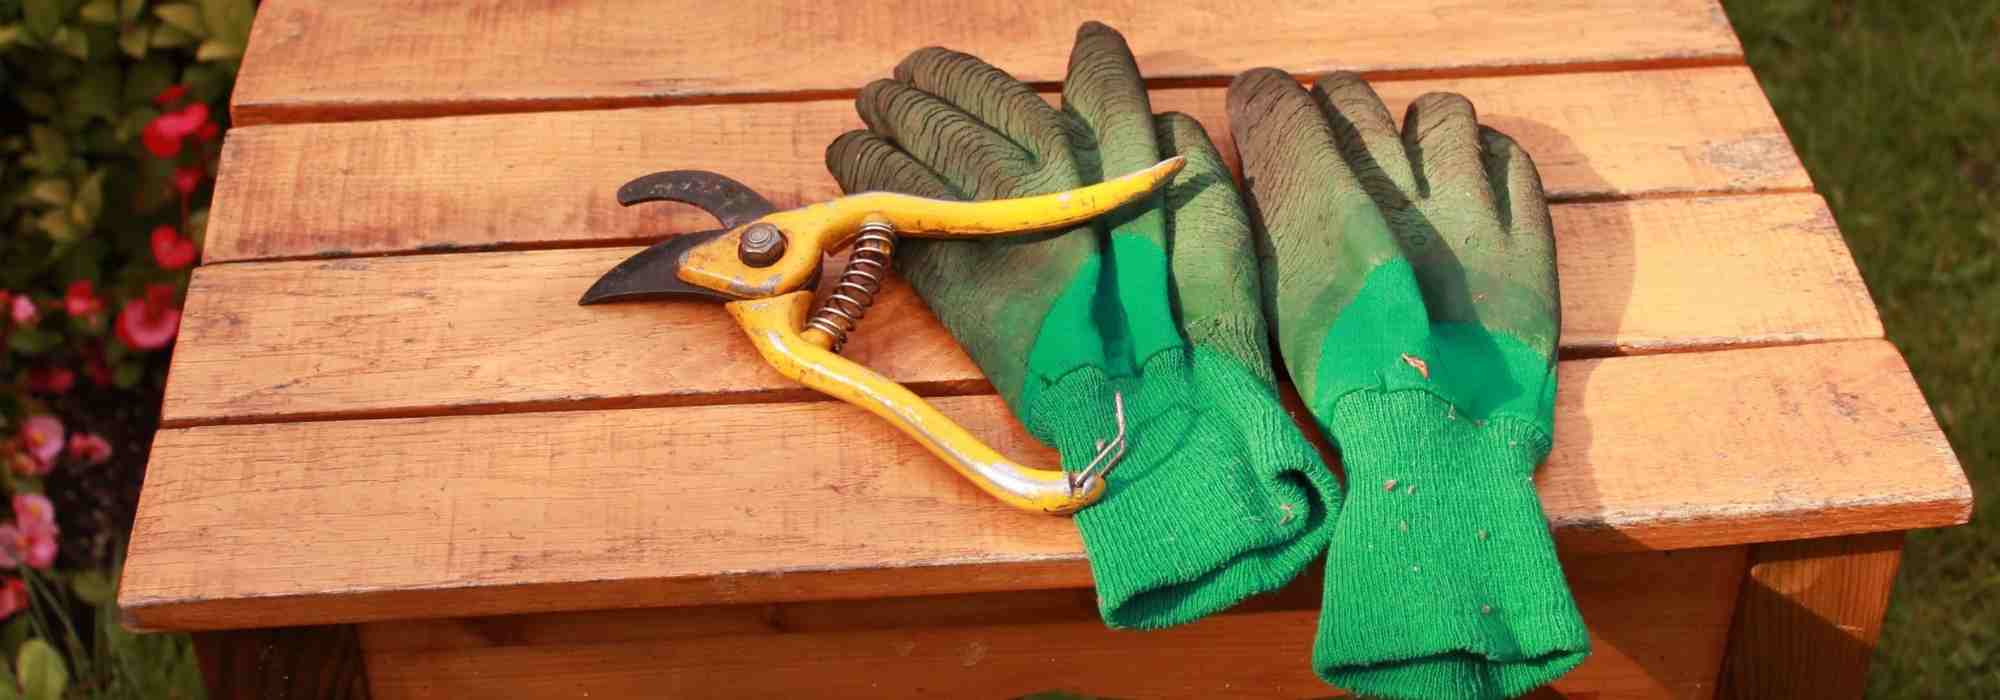 ROSTAING Gants RONCIER - Paire de Gants de Jardinage - Protection Cuir -  Gants de Jardinage pour les Épines et Ronces et Gants de Travail